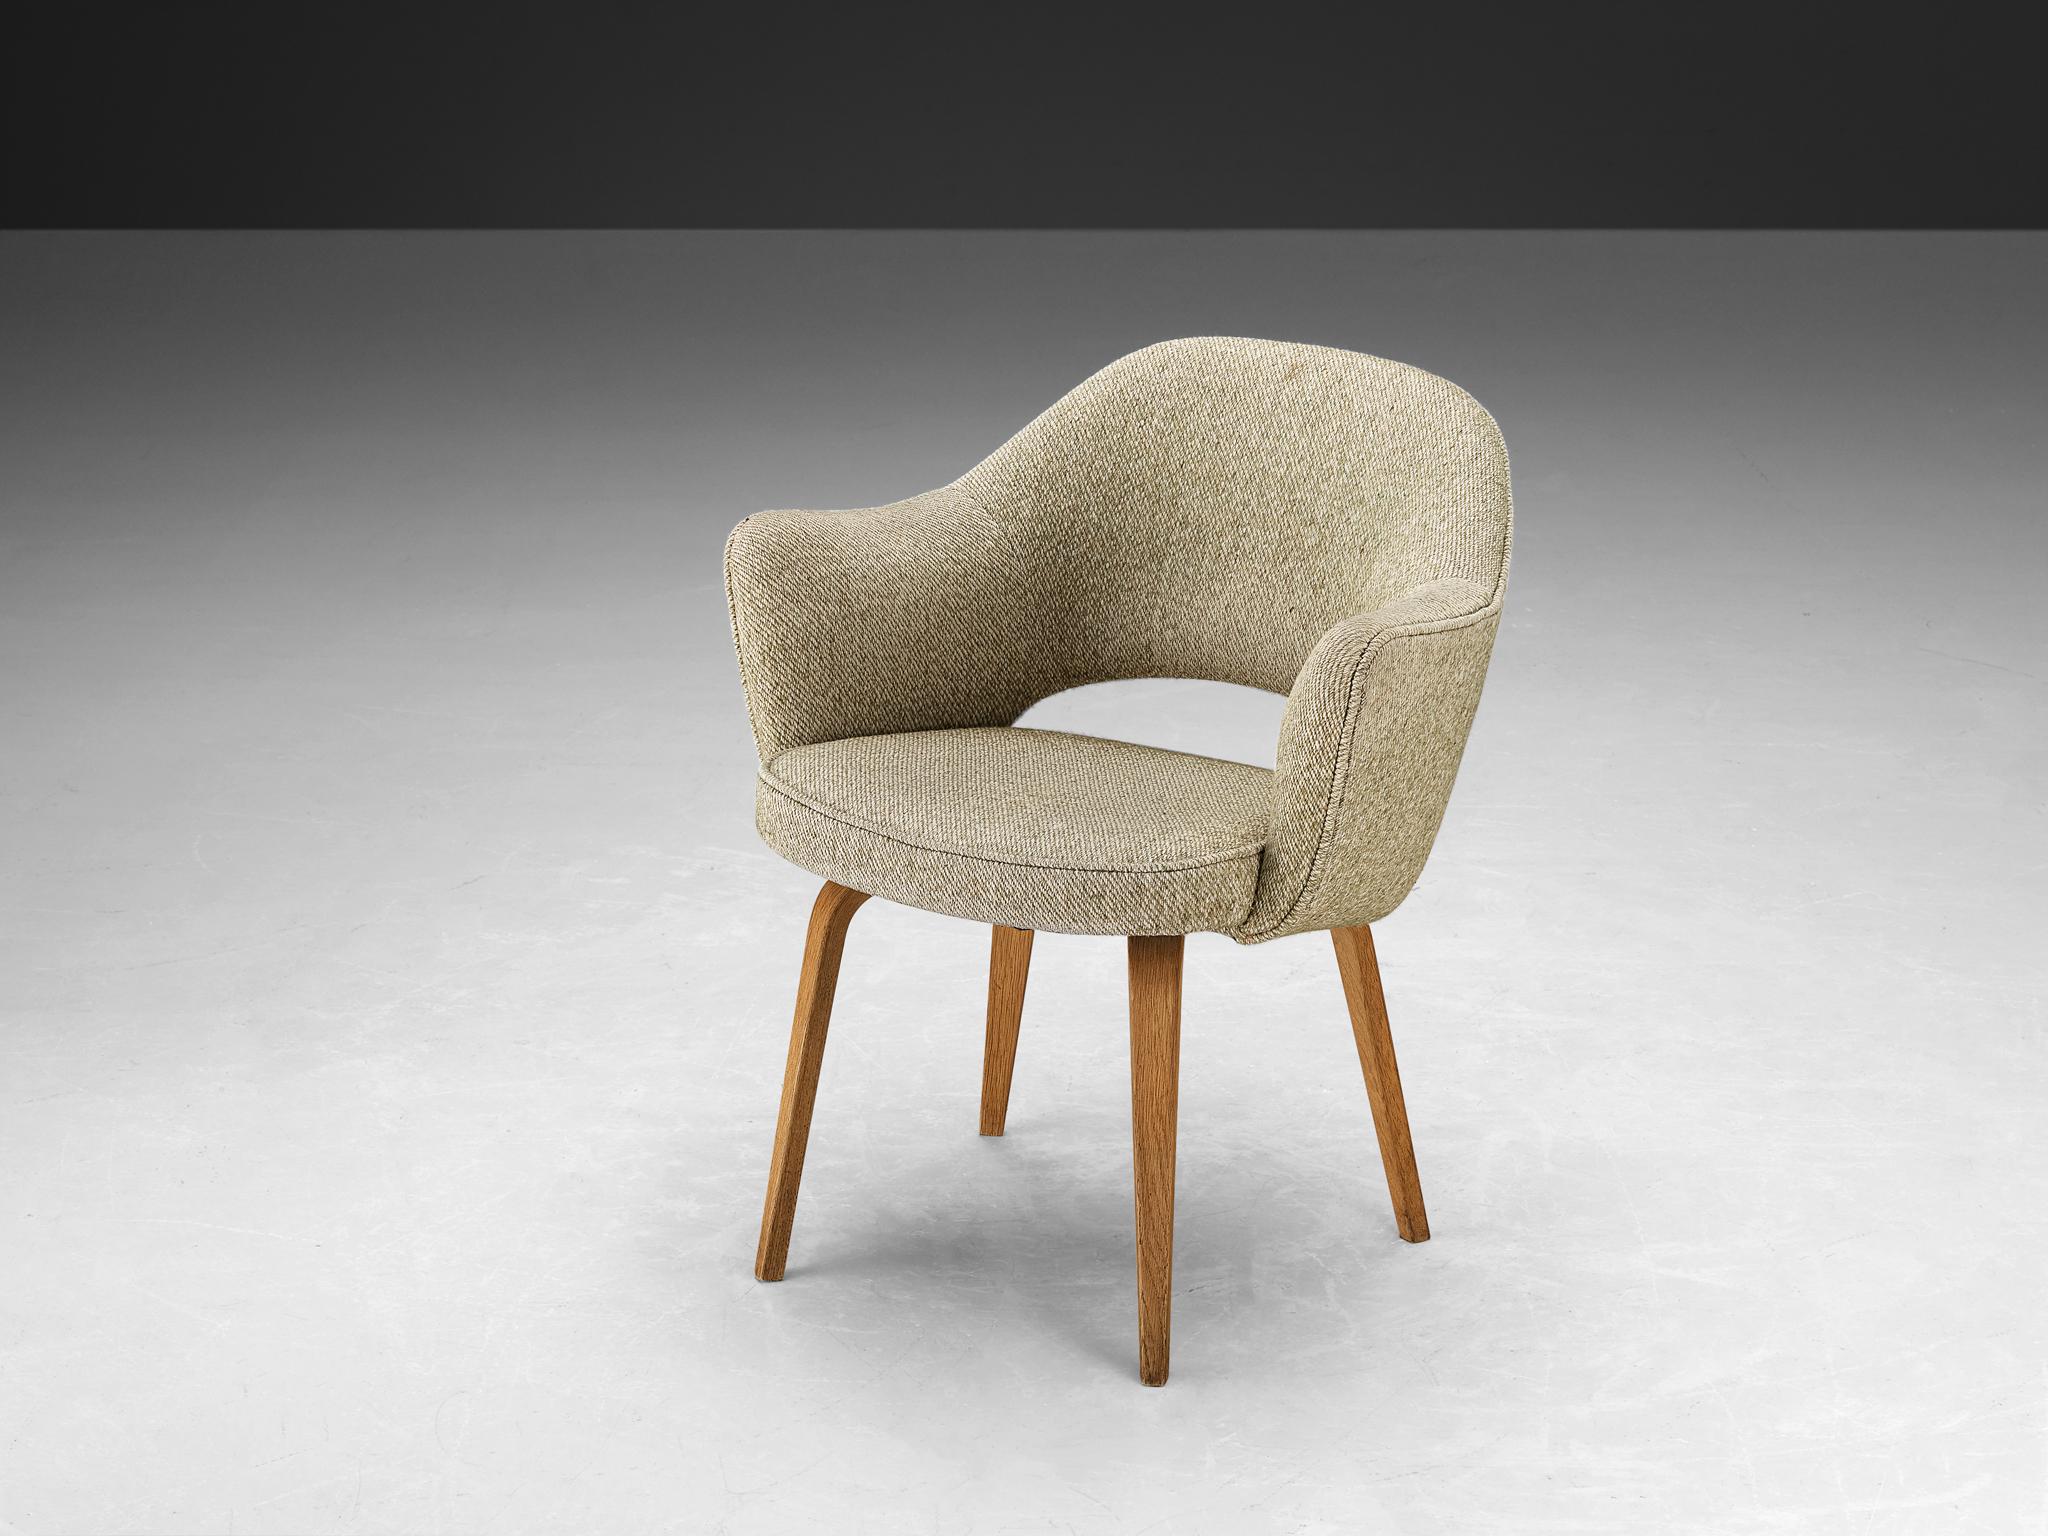 Eero Saarinen pour Knoll International, chaise de salle à manger, modèle 71, chêne, tissu, États-Unis, design 1948, production ultérieure

Une chaise de forme organique conçue par Eero Saarinen. Une forme fluide et sculpturale. Ce design intemporel